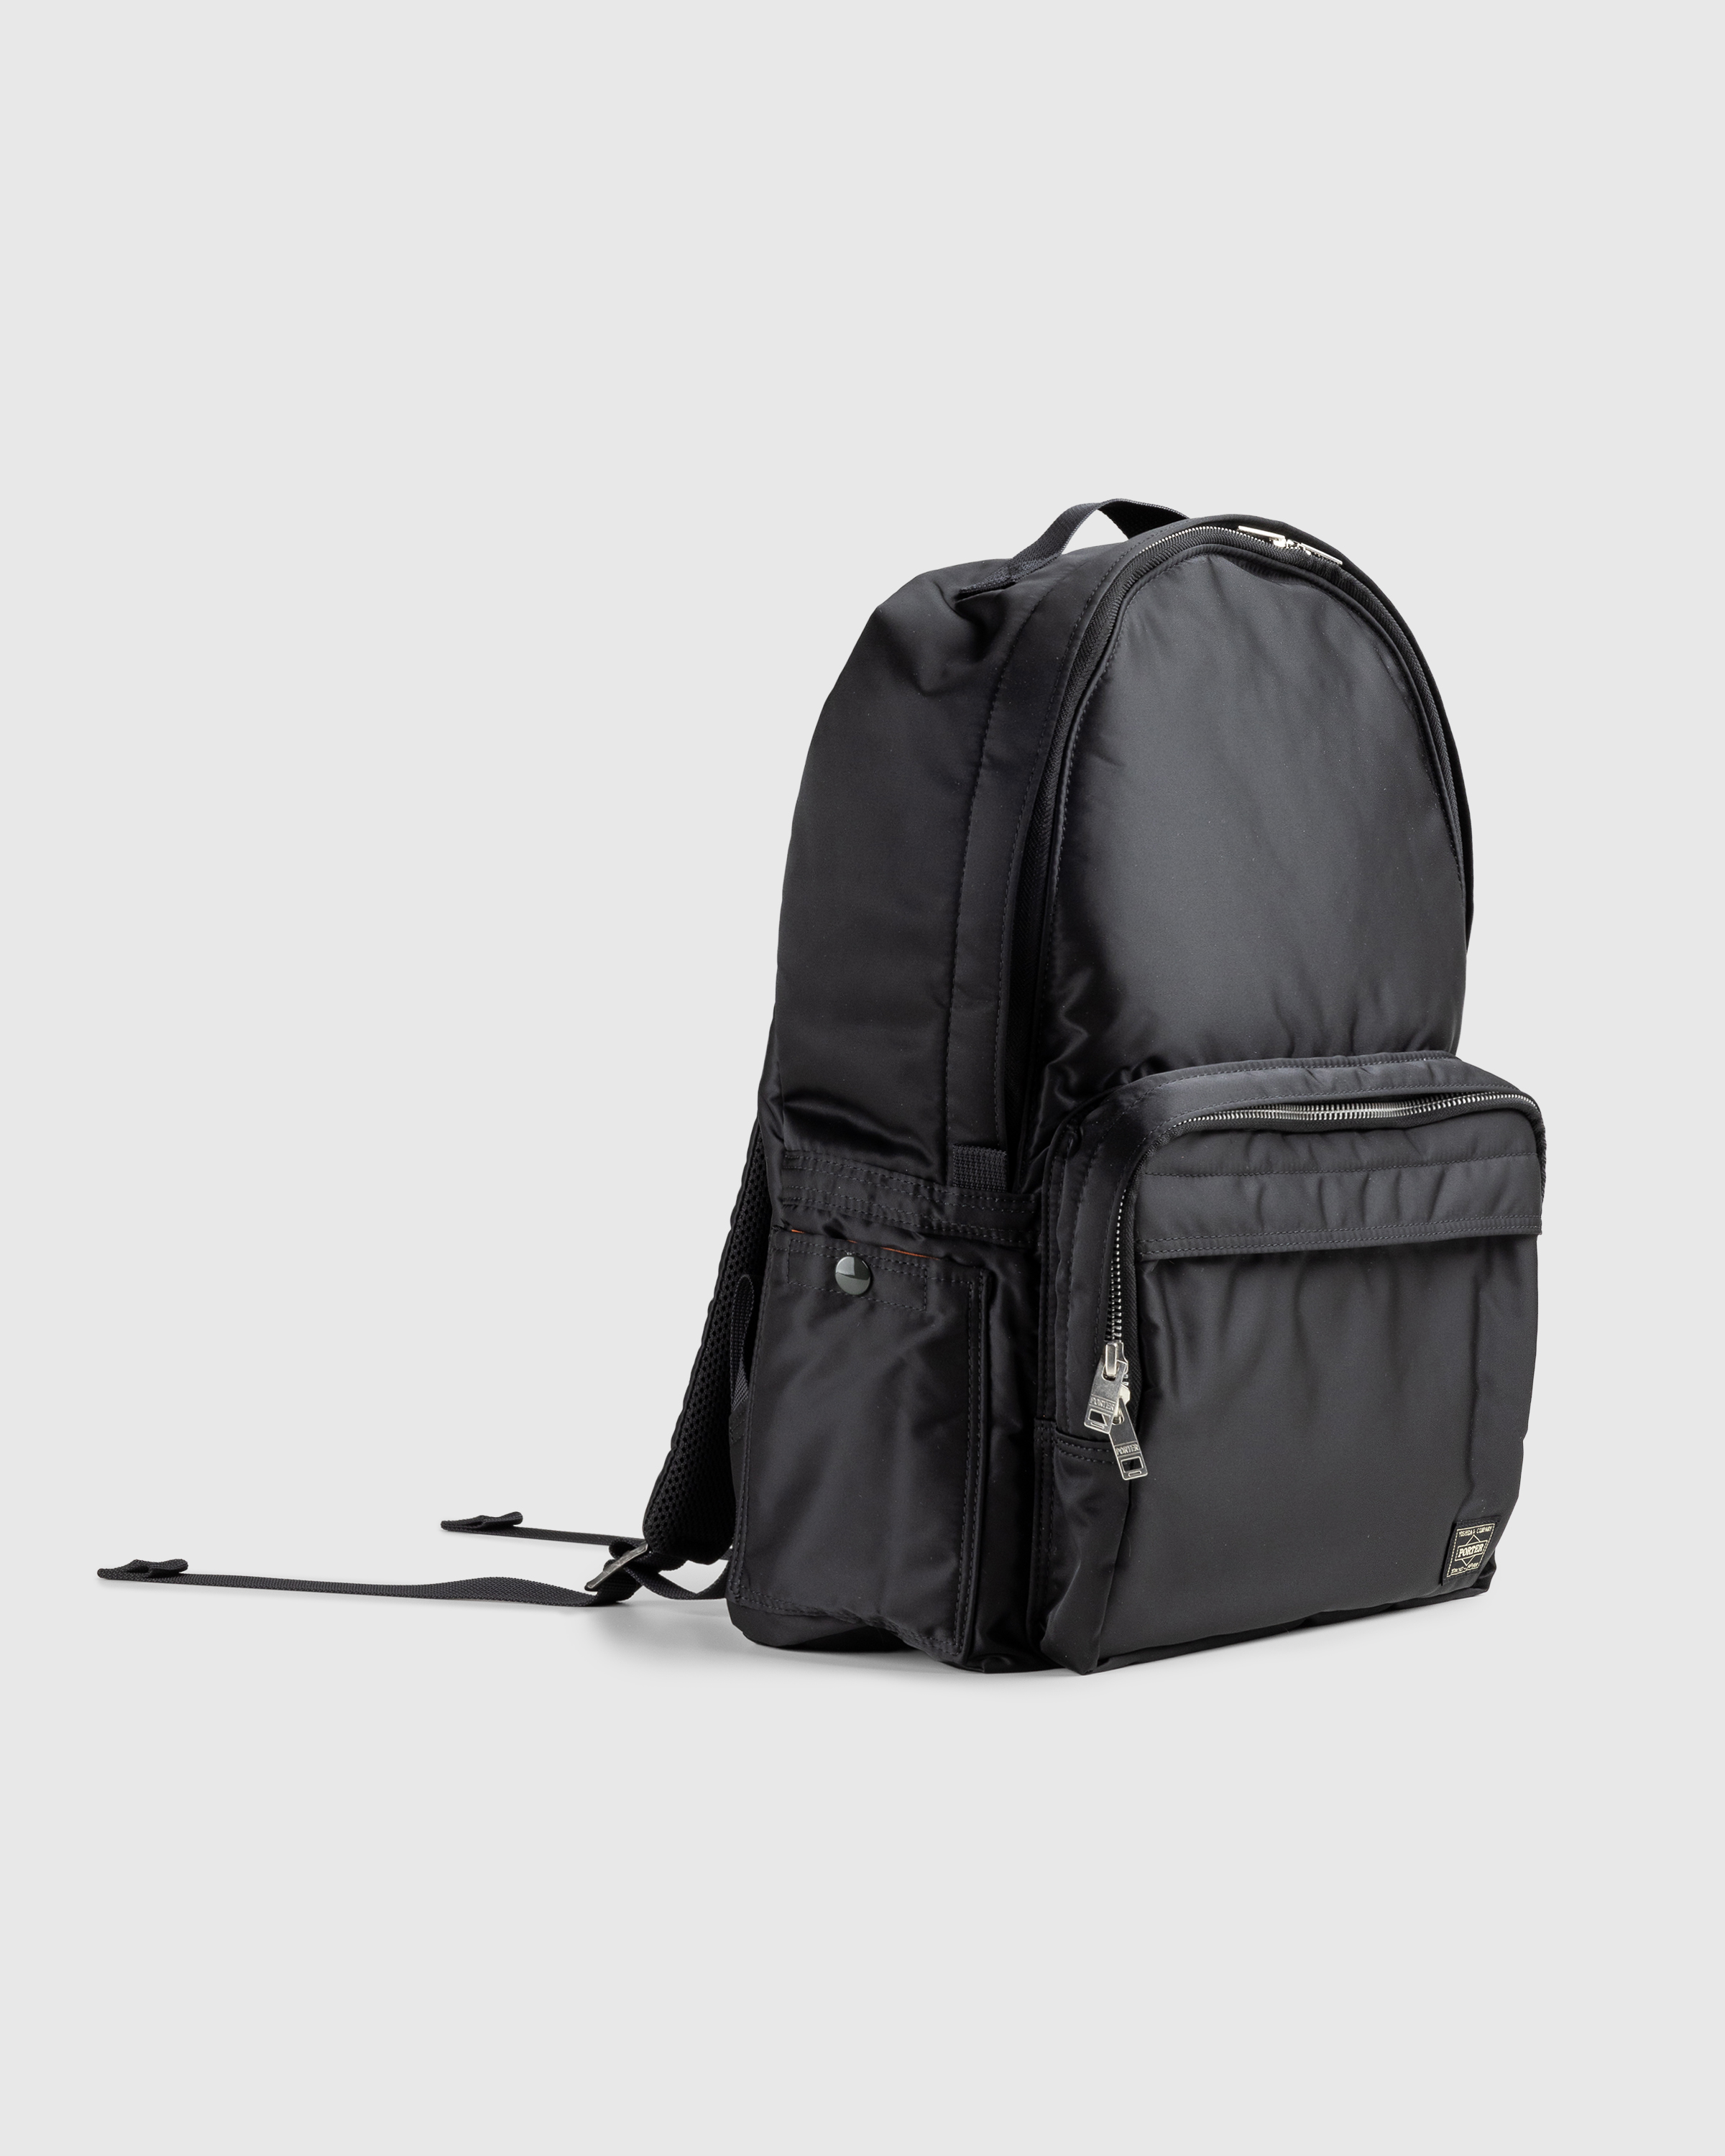 Porter-Yoshida & Co. – Tanker Daypack Black - Shoulder Bags - Black - Image 3